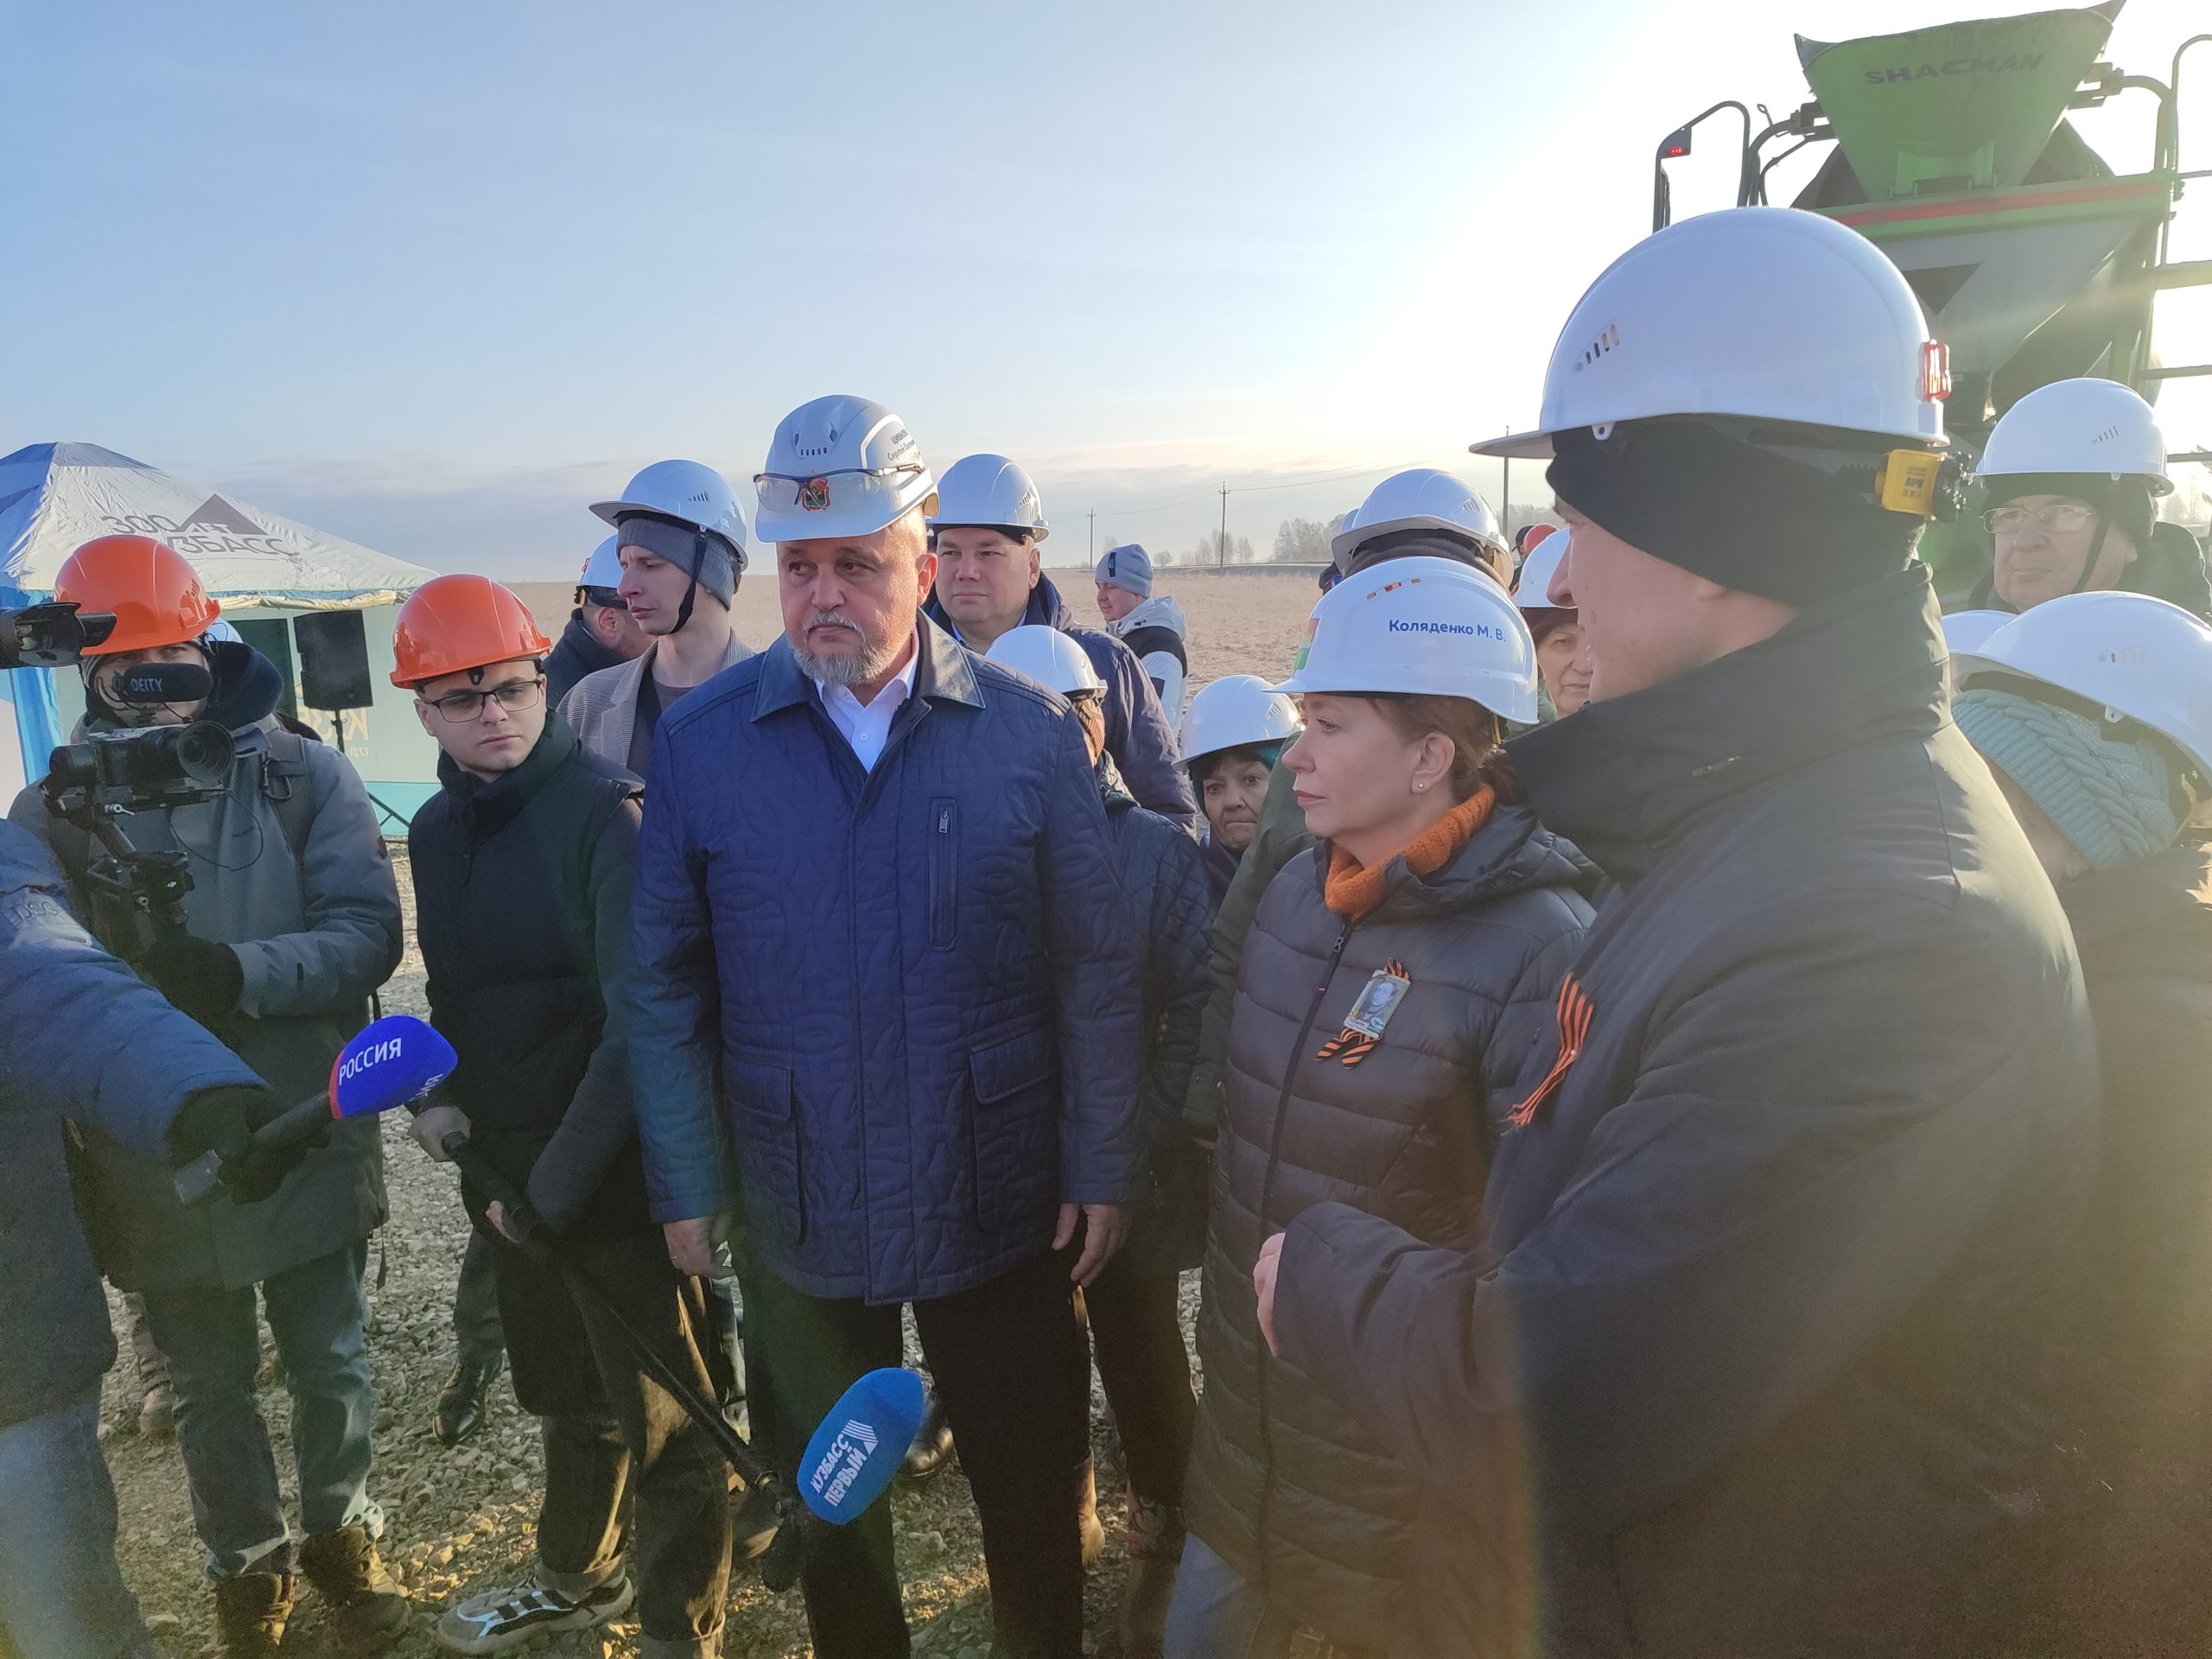 Первый в стране: в Кузбассе началось строительство нового животноводческого комплекса